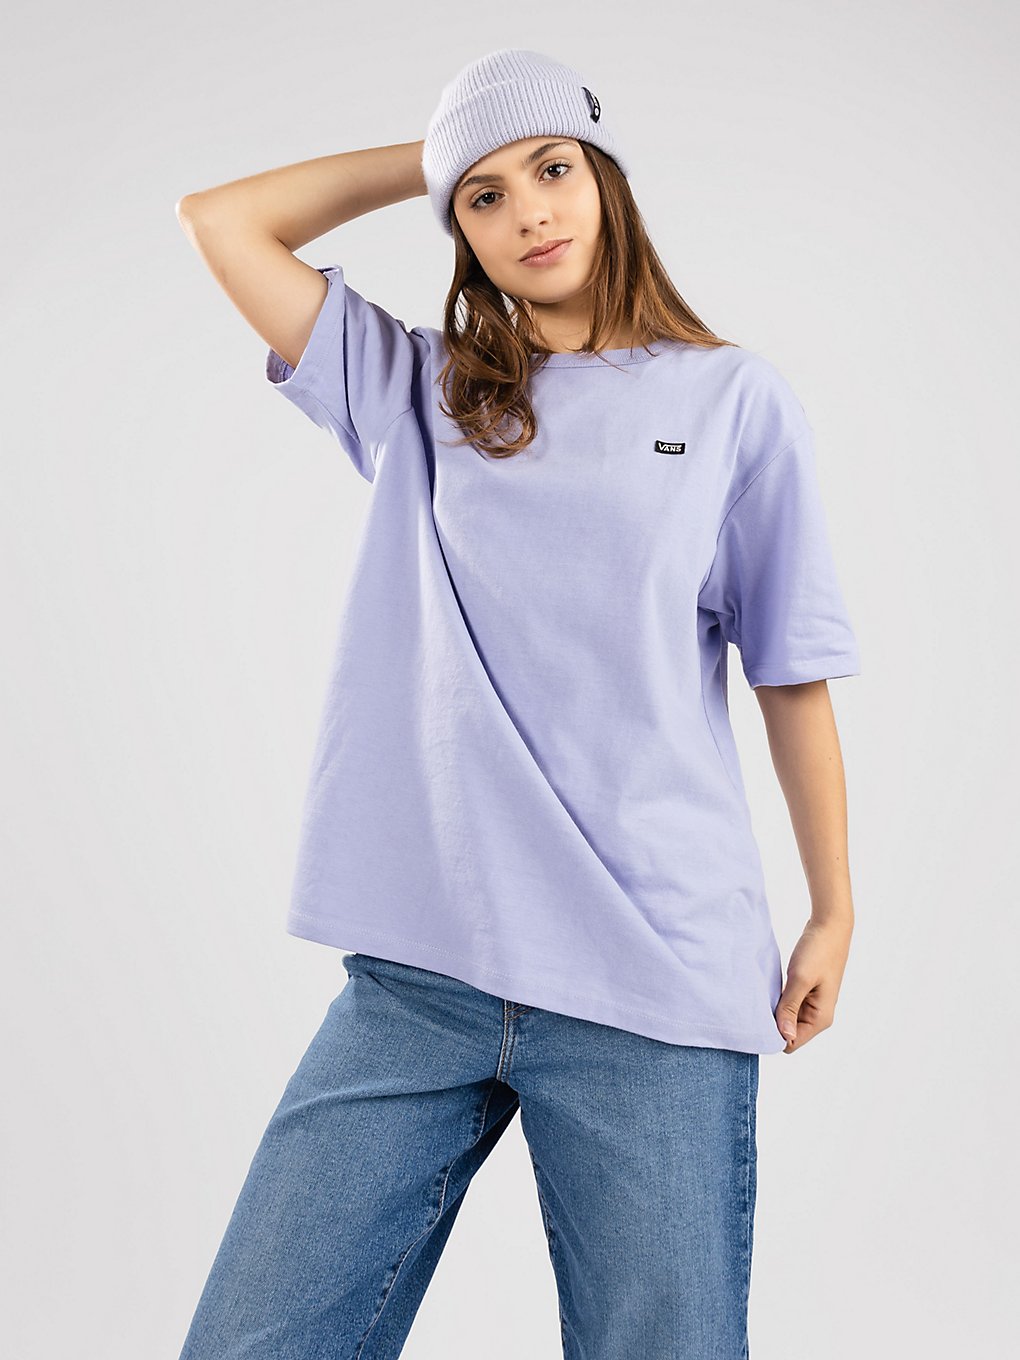 Vans OTW T-Shirt sweet lavender kaufen